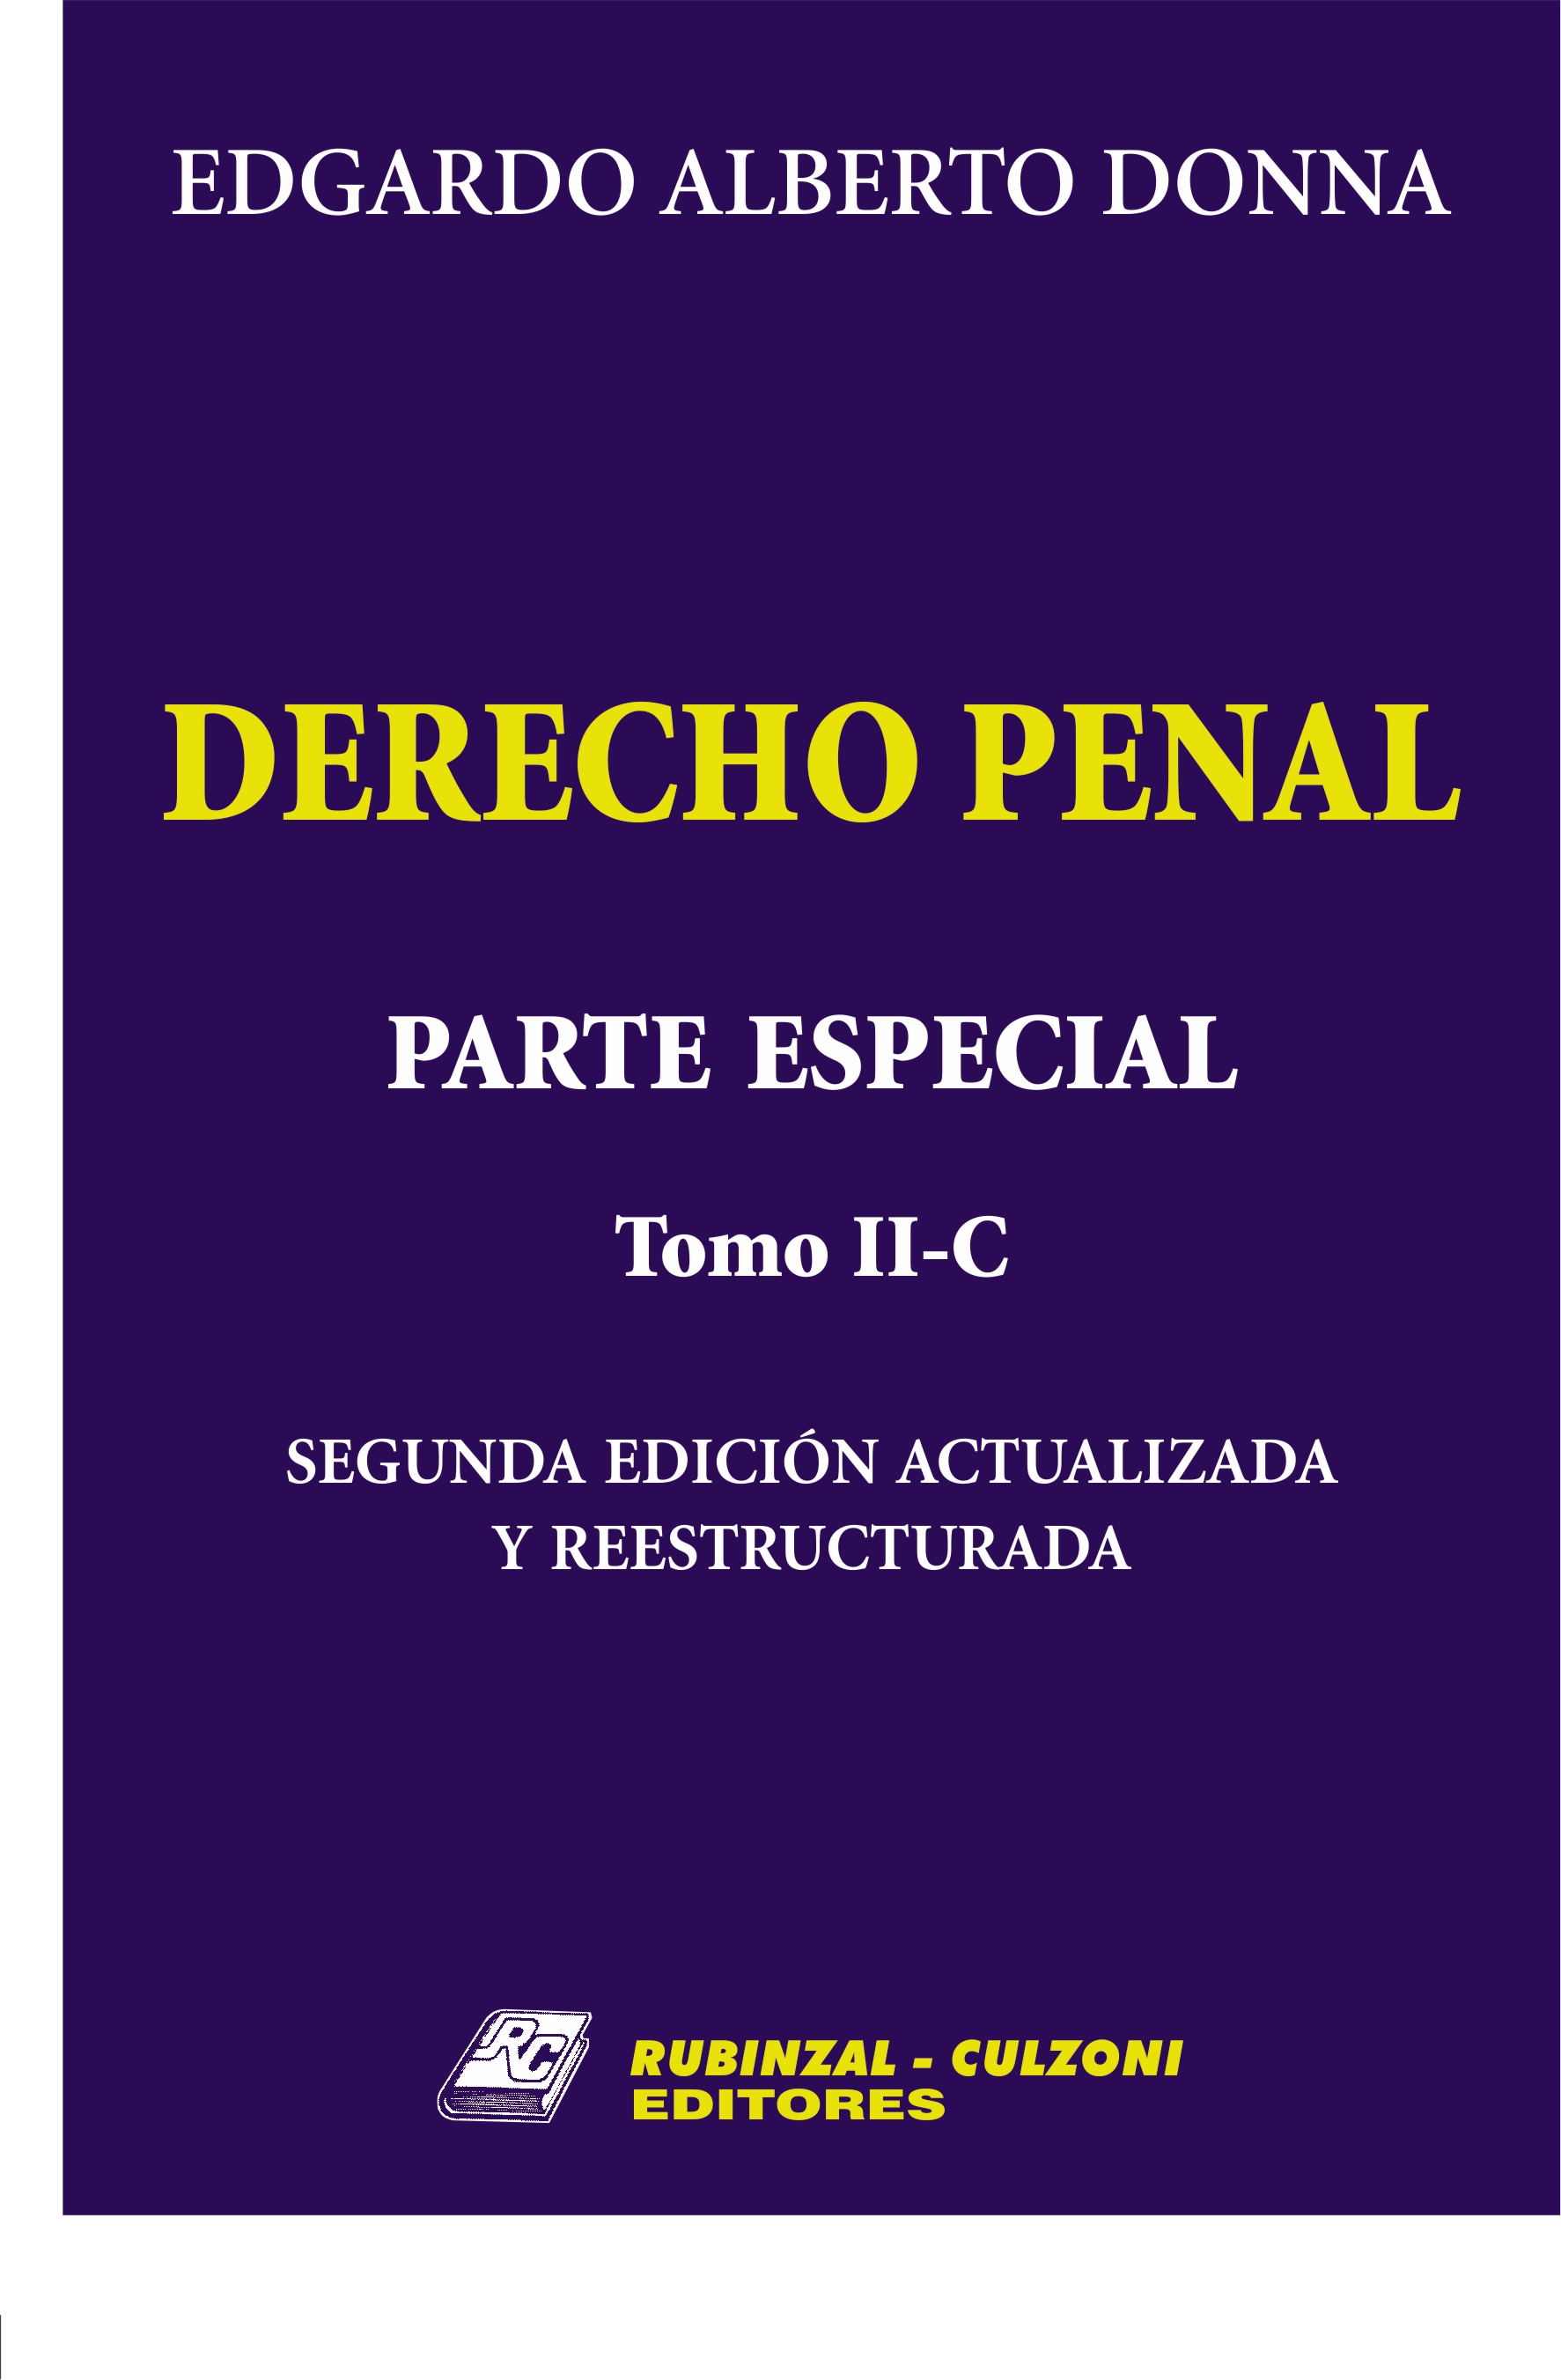 Derecho Penal. Parte Especial. - Tomo II-C. 2ª Edición actualizada y reestructurada